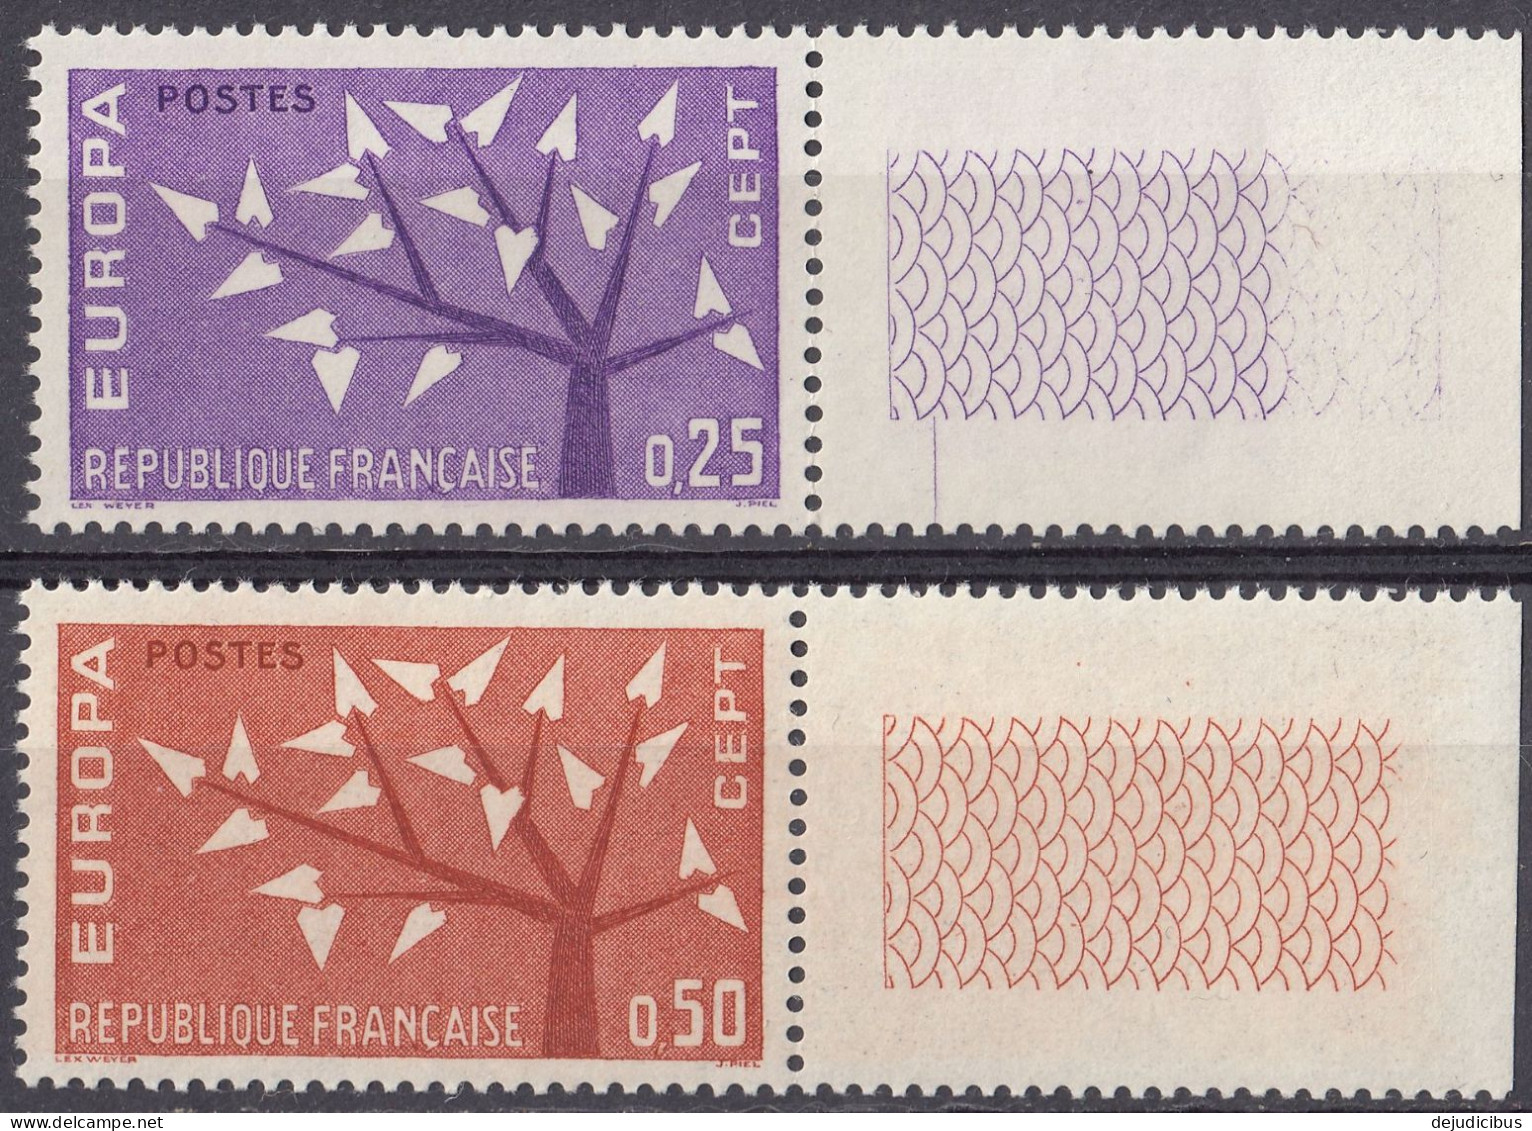 FRANCE - 1962 - Serie Completa Formata Da 2 Valori Nuovi MNH: Yvert 1358/1359 Con Margini Di Foglio. - Nuevos